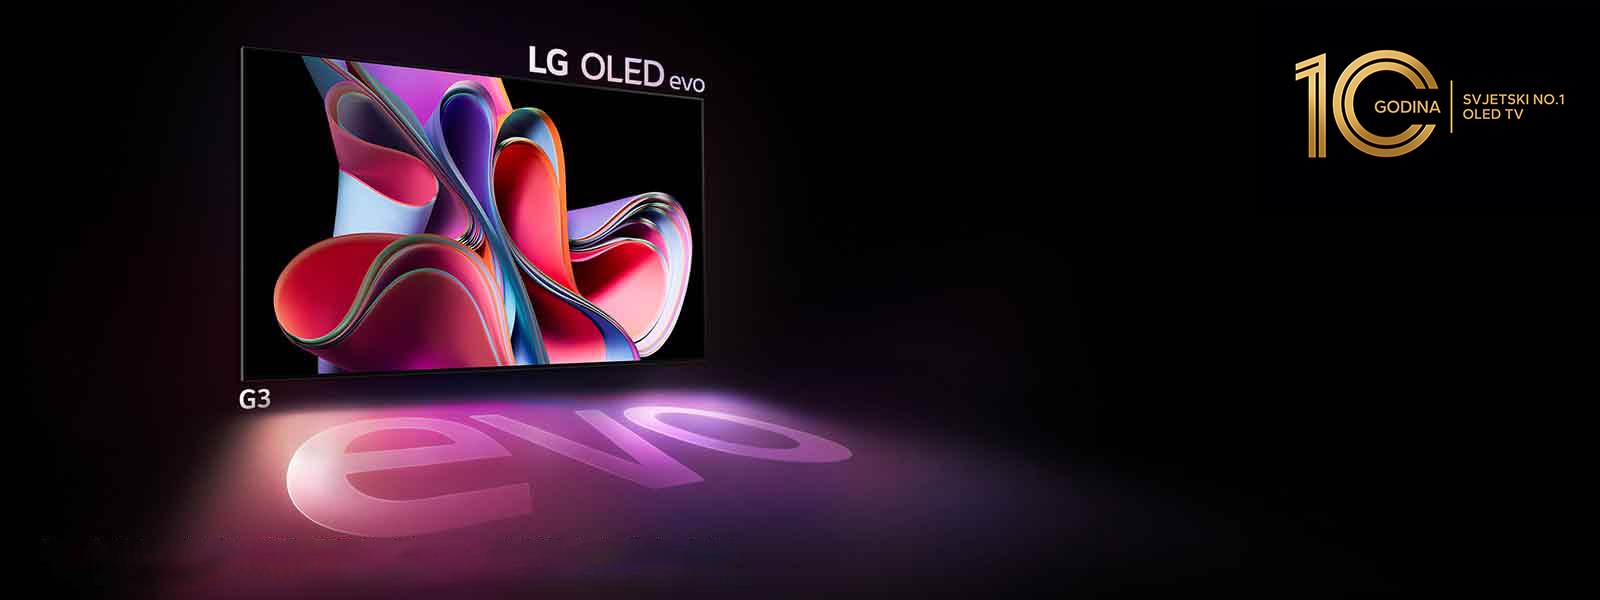 LG OLED G3 sjaji u tamnom prostoru. A u gornjem desnom dijelu nalazi se logotip za obilježavanje 10. godišnjice televizora OLED.